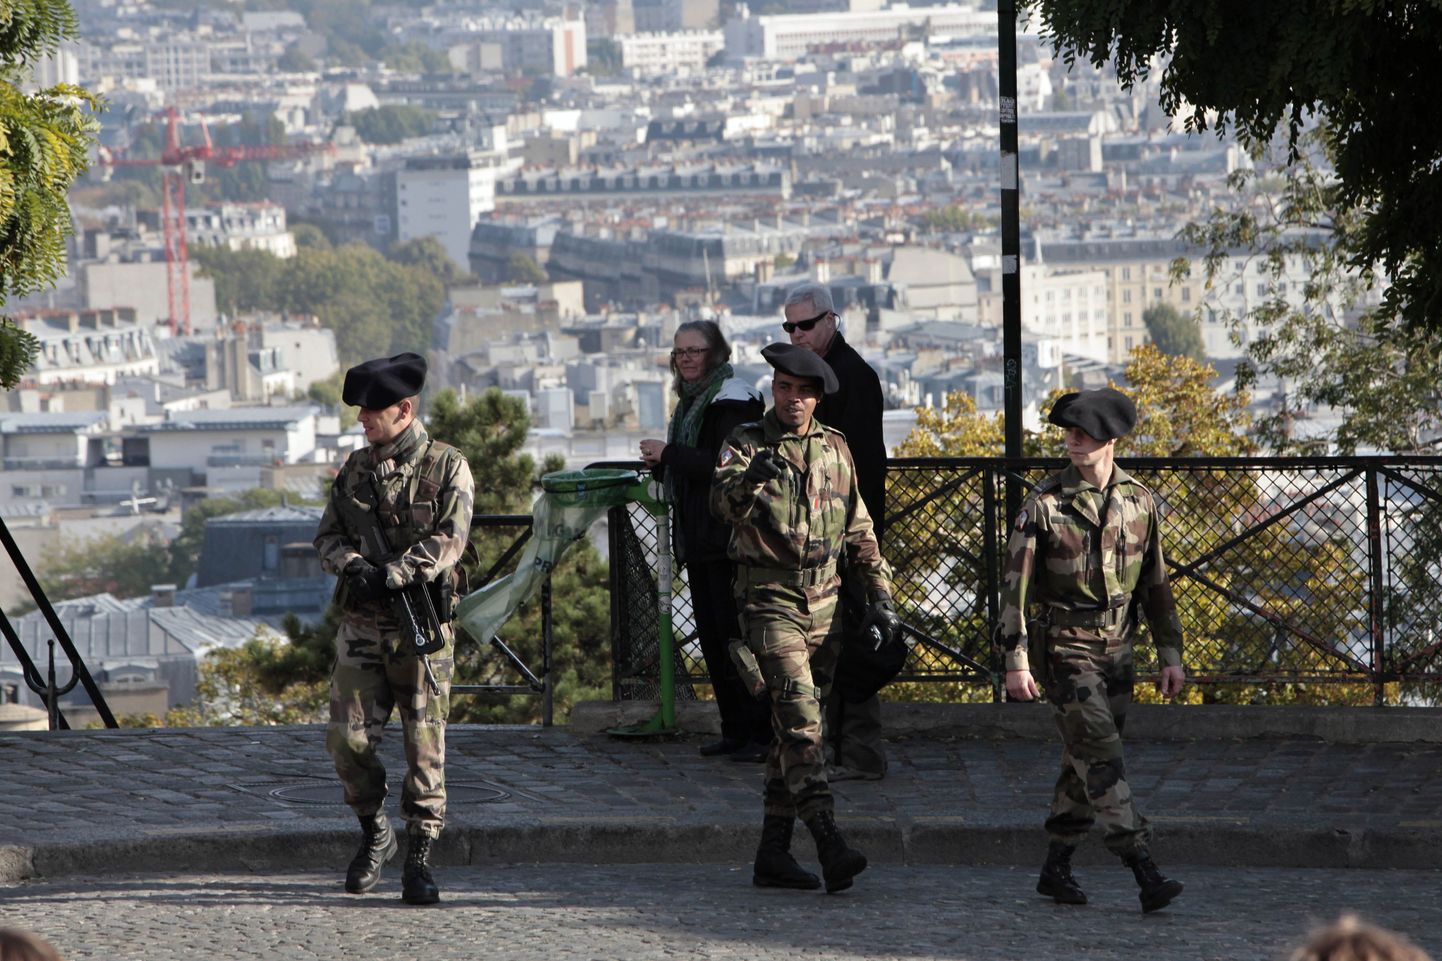 Sõdurid patrullimas Pariisis Sacre Coeur'i kiriku juures.